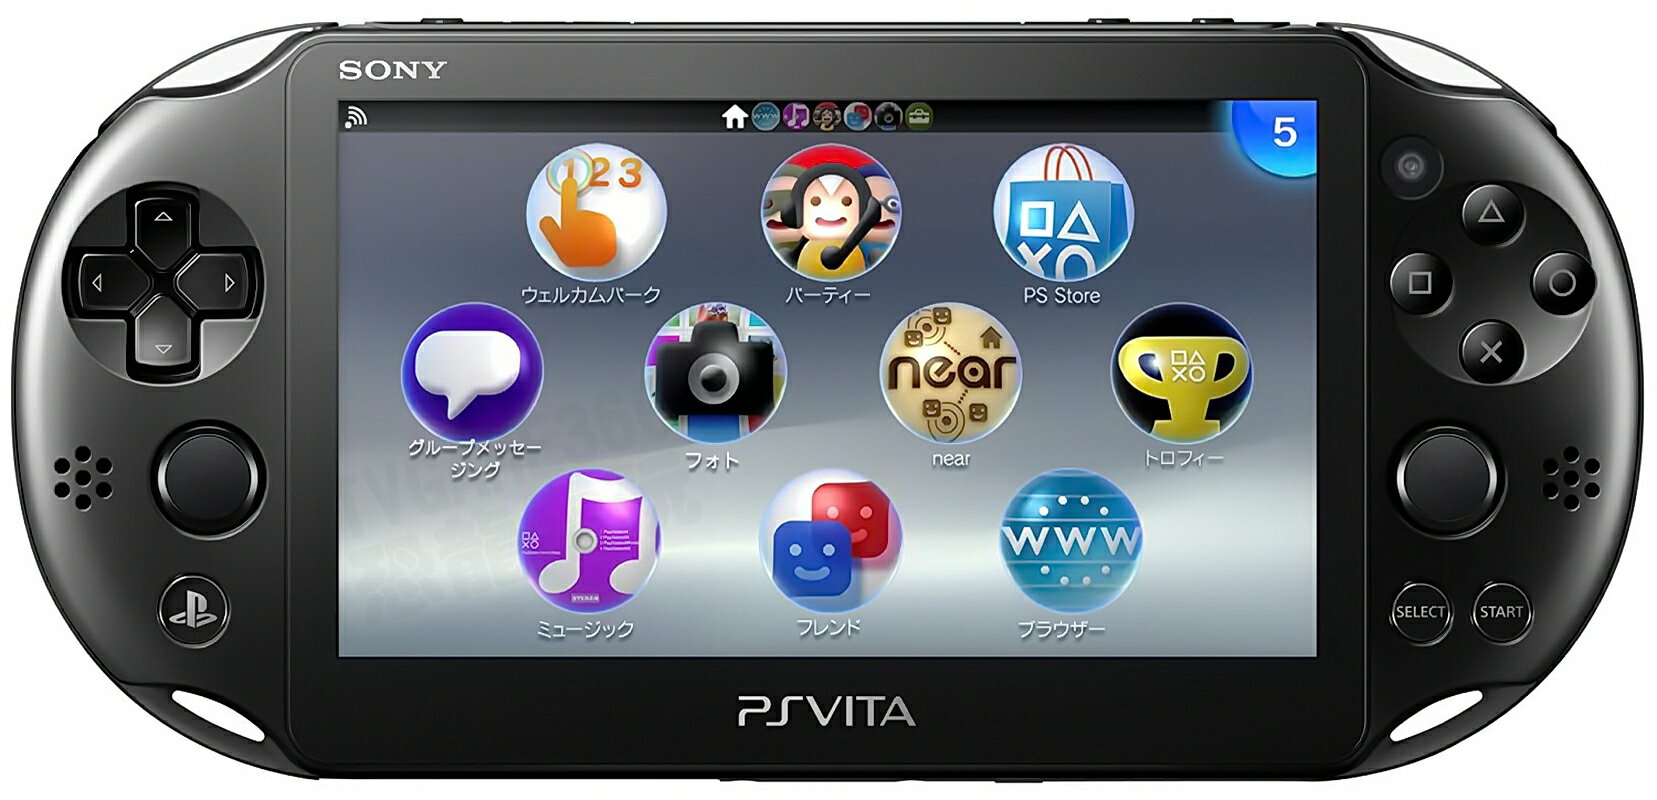 二手主機 Sony Psvita 07 主機黑色附充電器usb傳輸線ps Vita Psv 無盒裝 最新上架 痞客邦